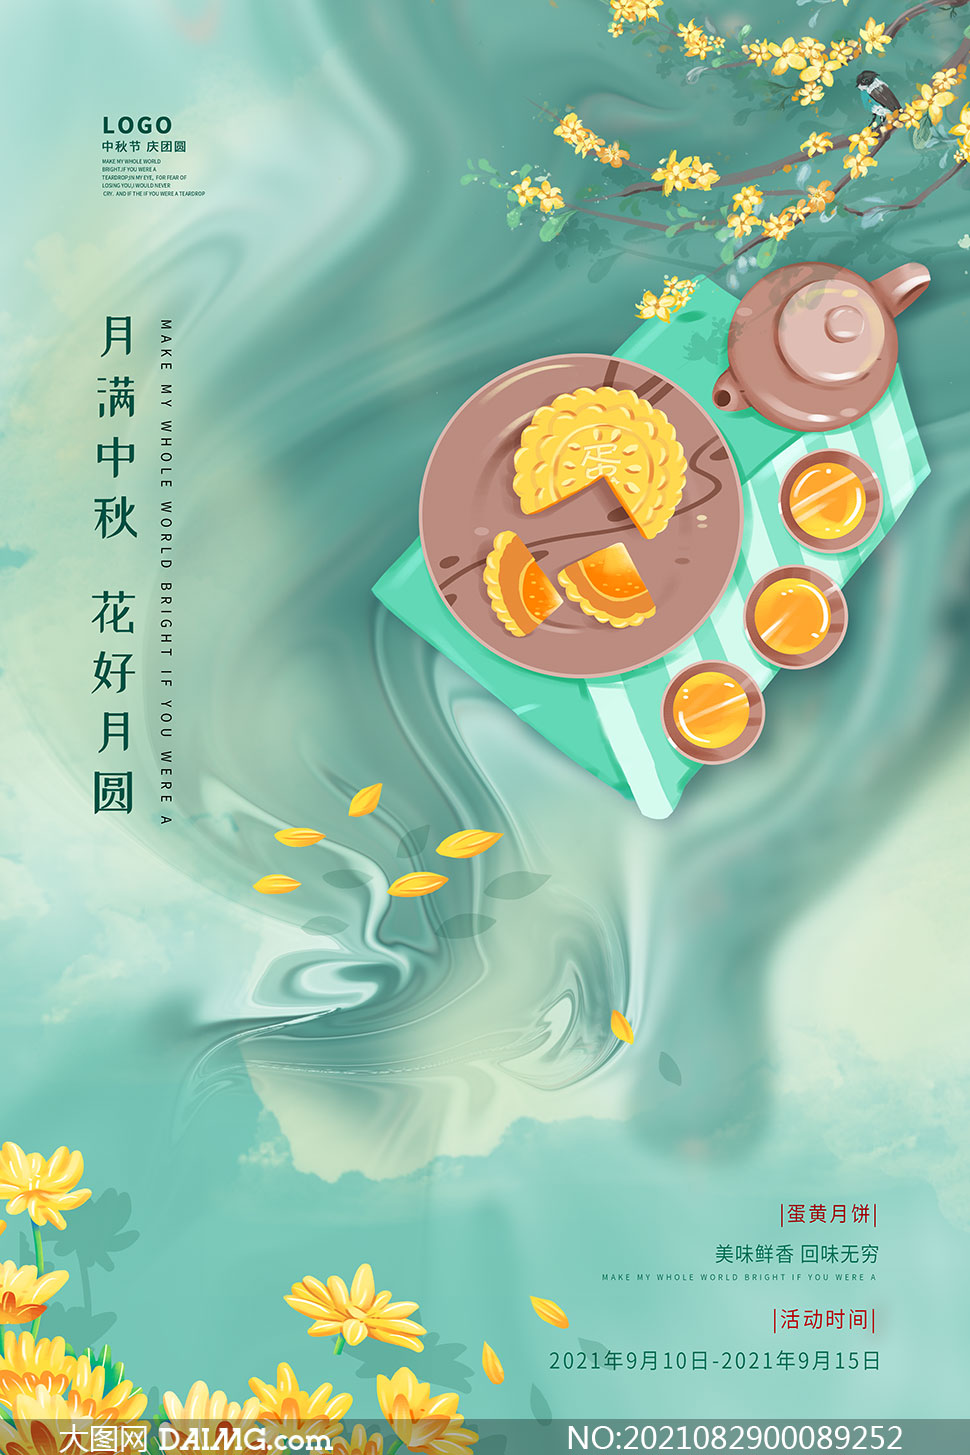 中秋节月饼创意海报设计psd模板